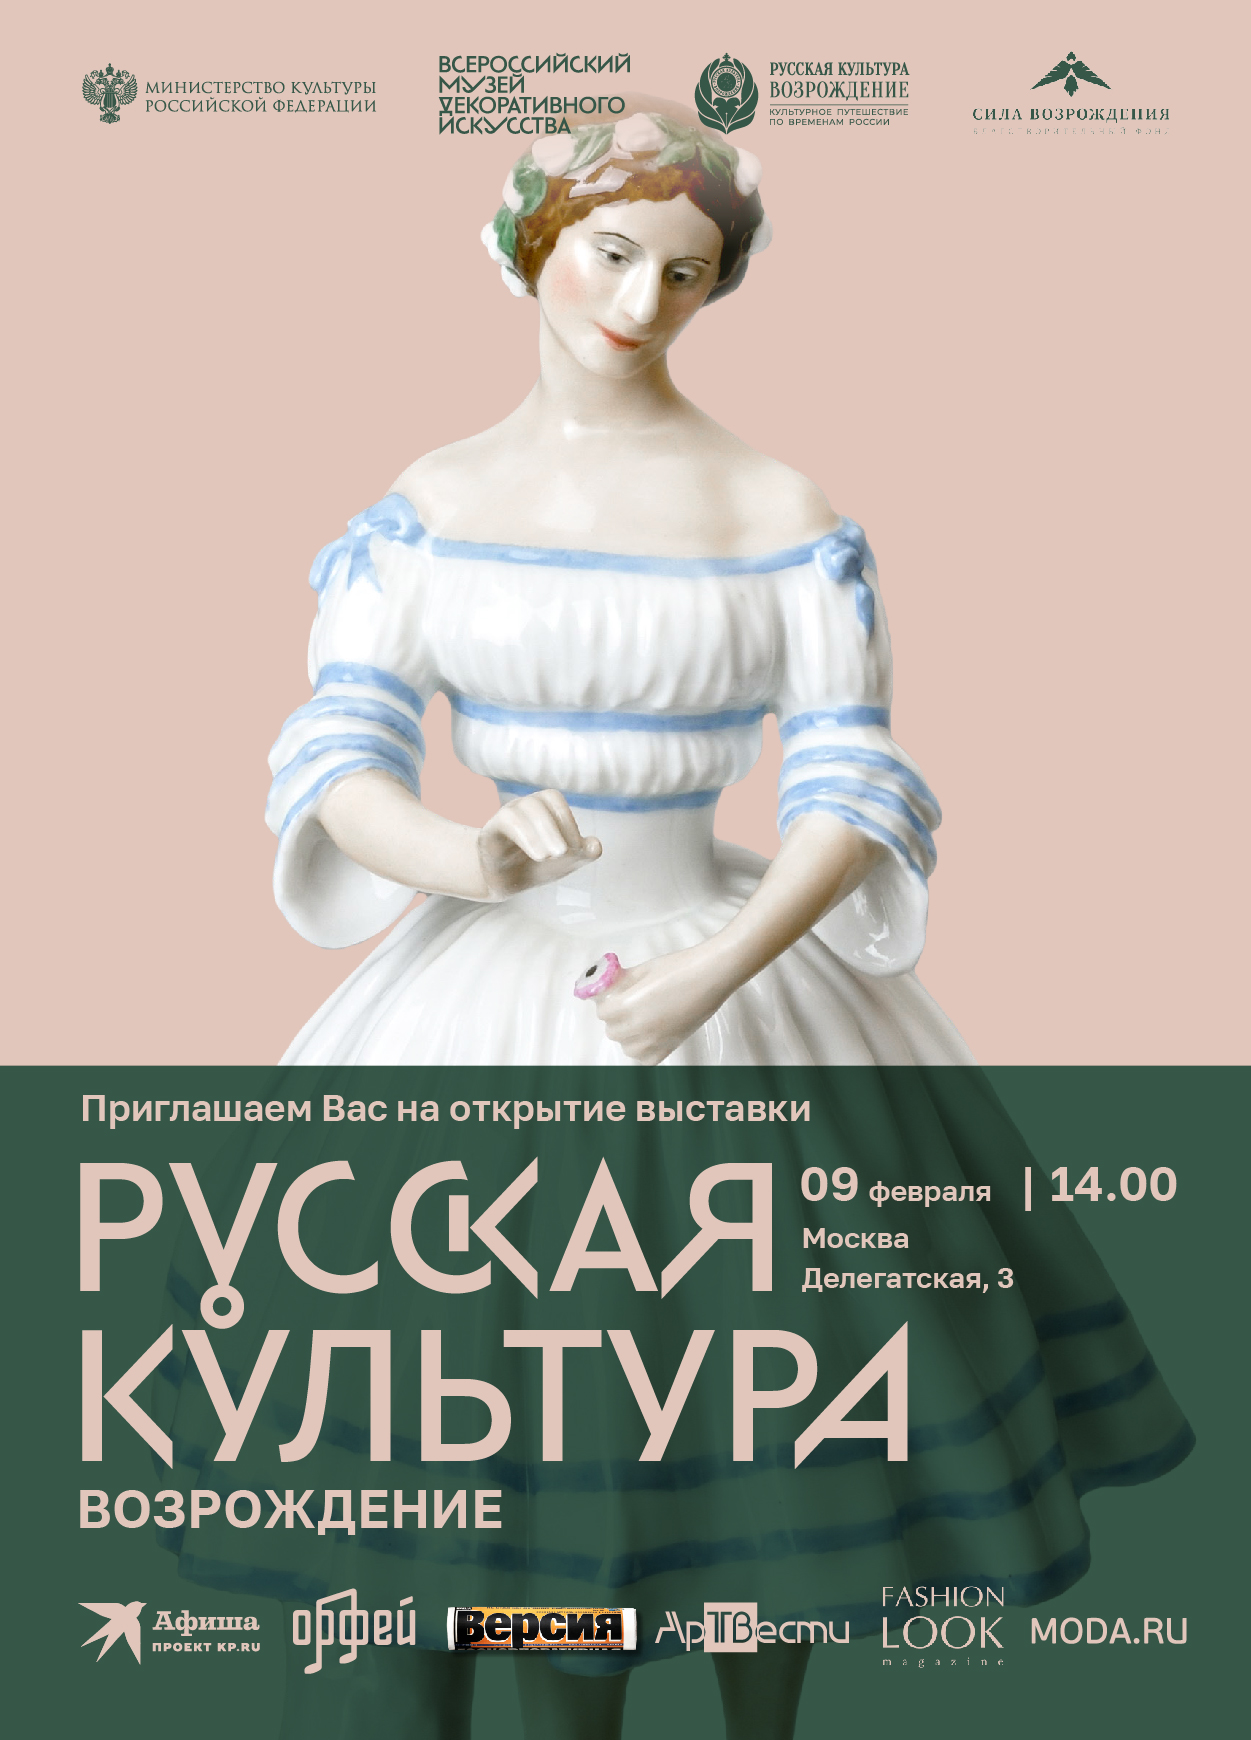 Всероссийском музее декоративного искусства